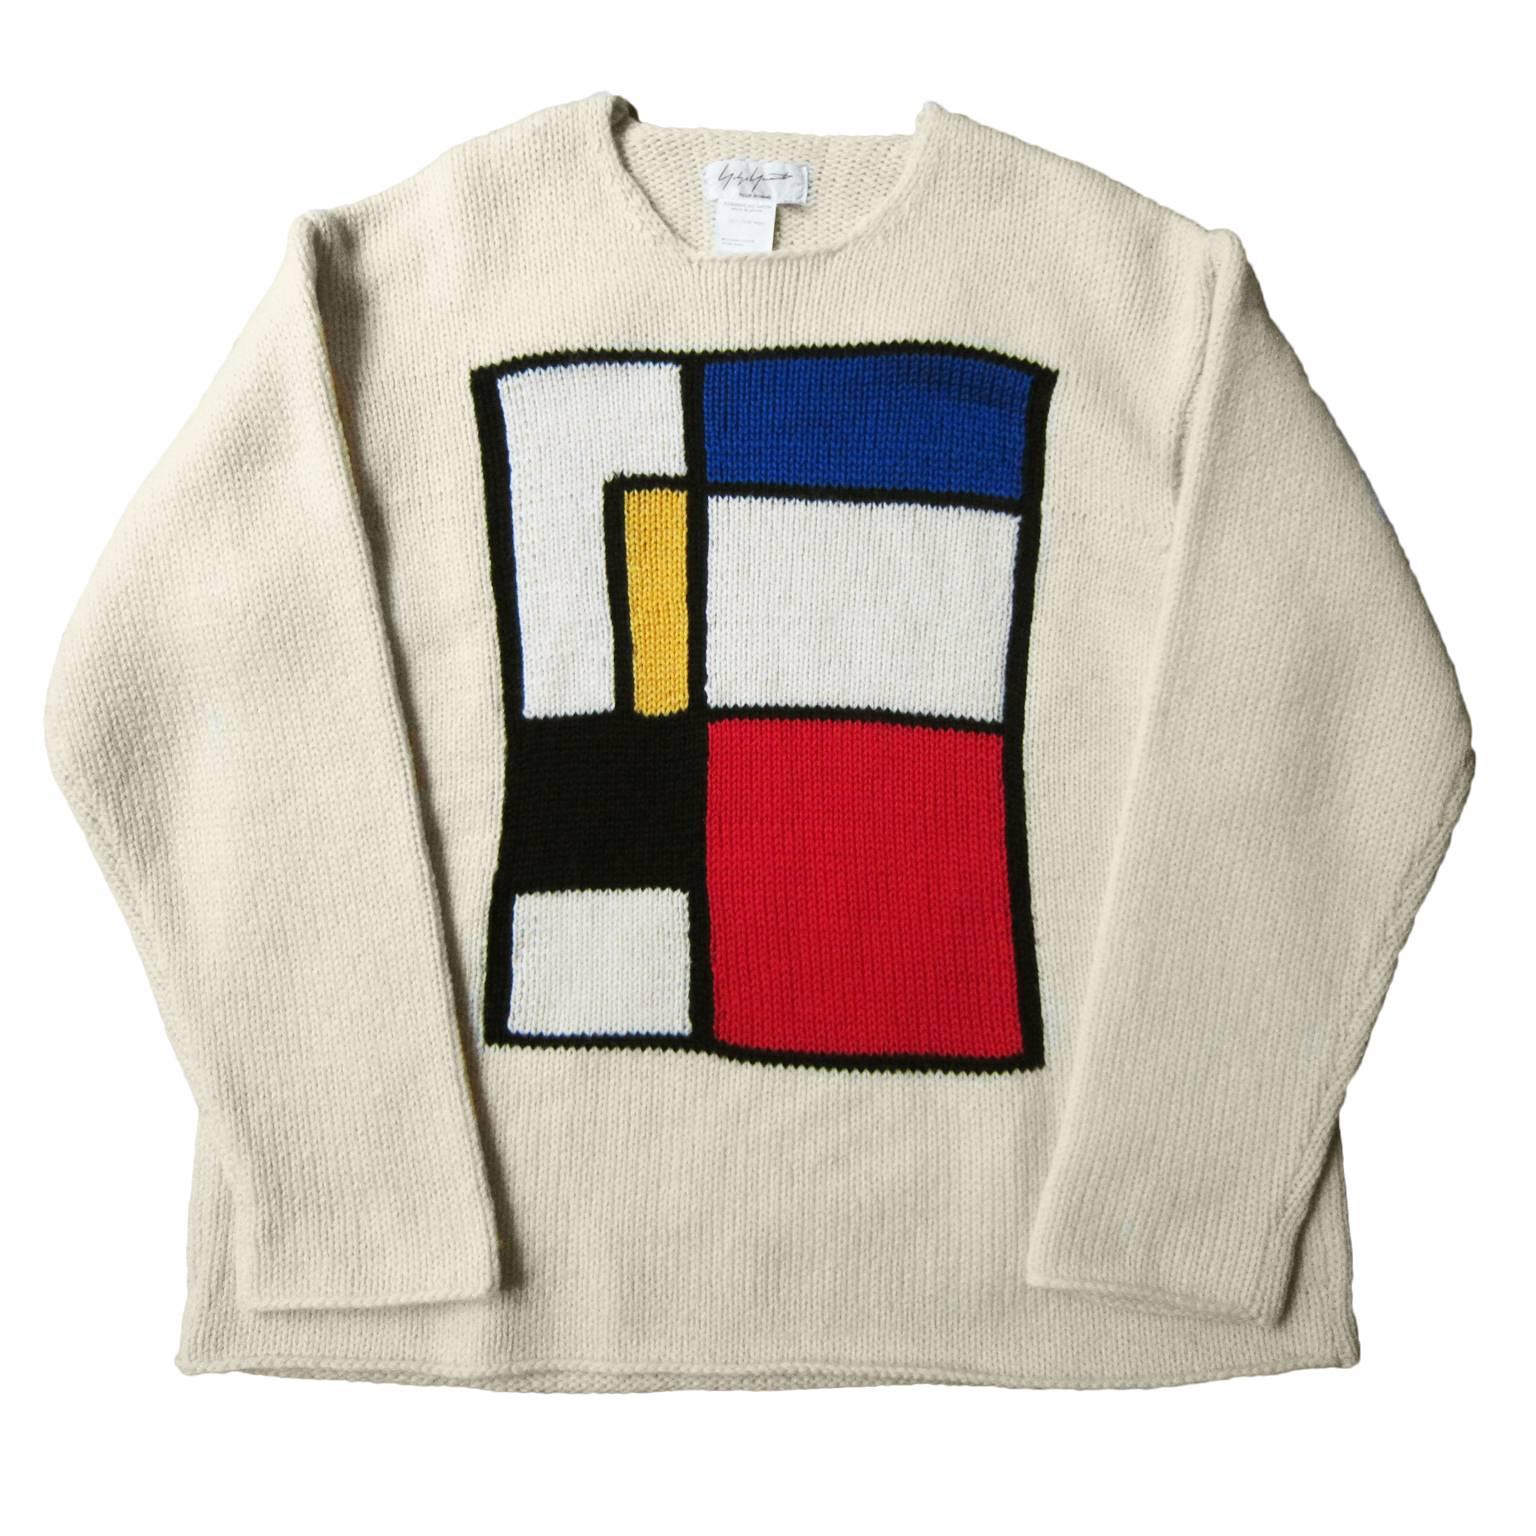 Yohji Yamamoto Mondrian Sweater 90s